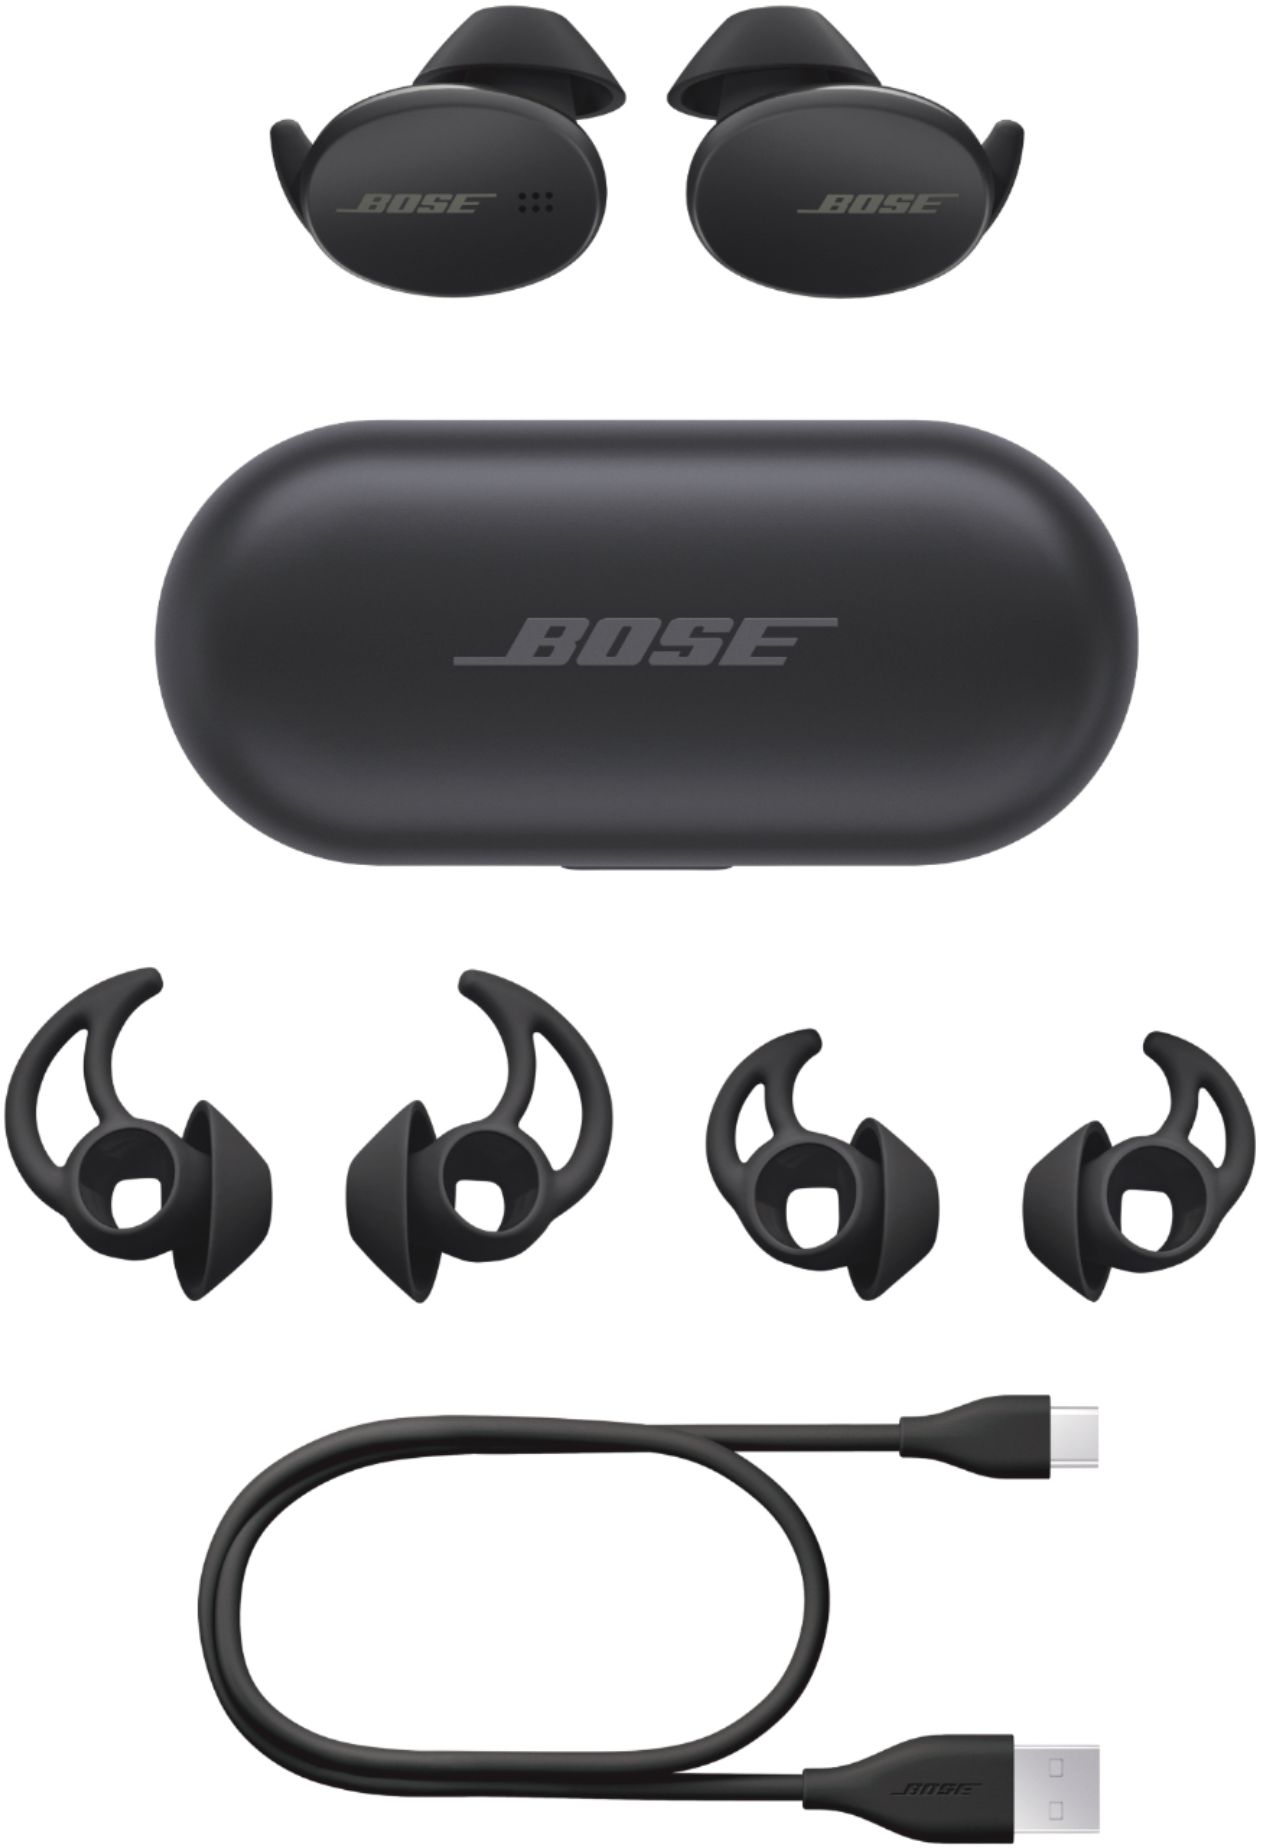 Bose SoundSport Free True Wireless Headphones Blue 774373-0020 - Best Buy